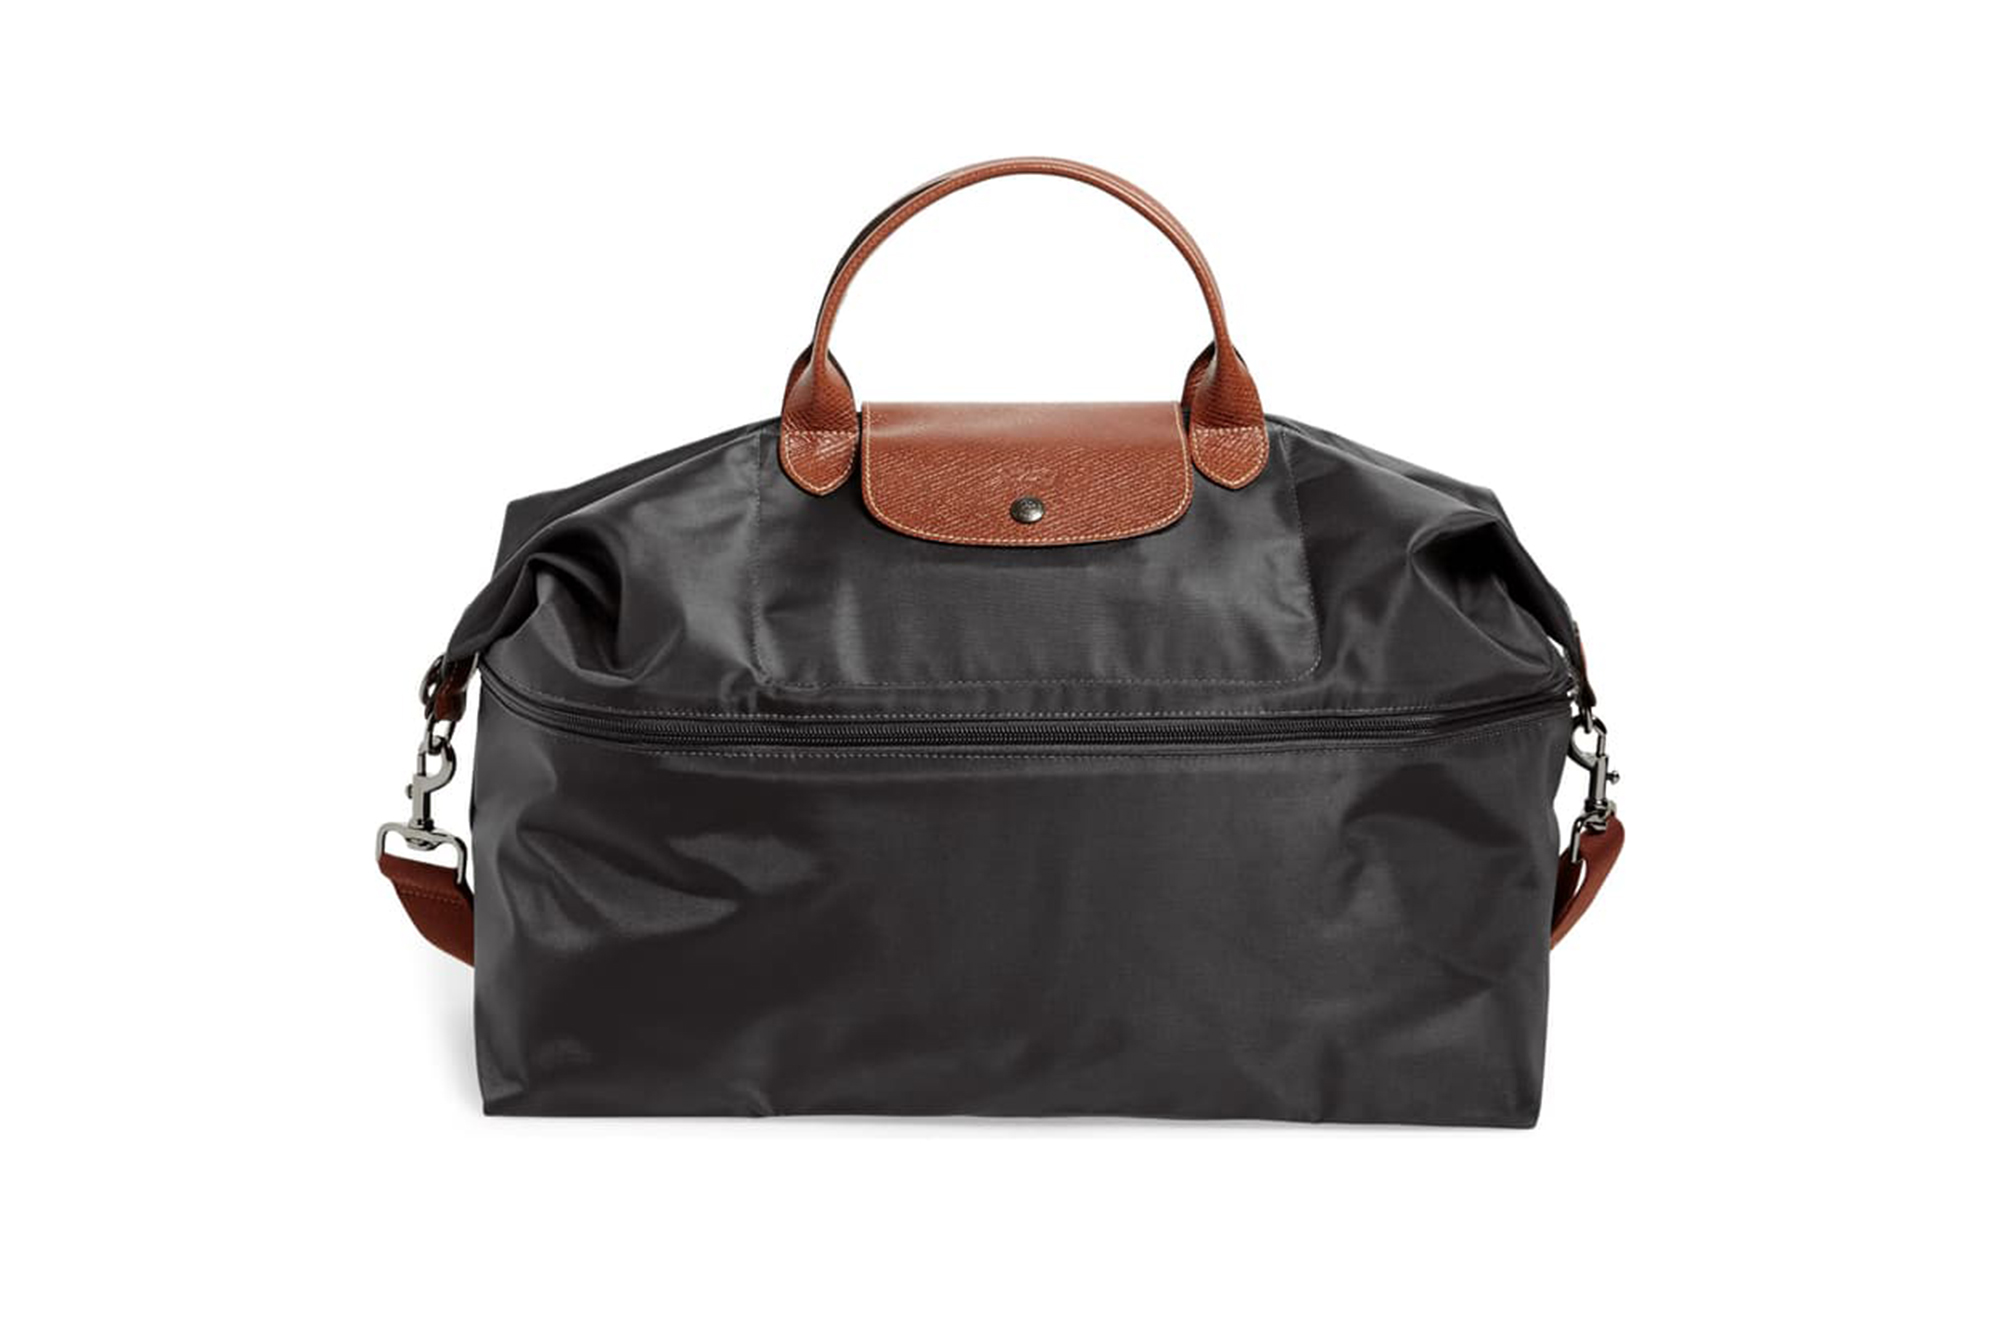 Travel Bag Expandable Le Pliage Original Navy Longchamp